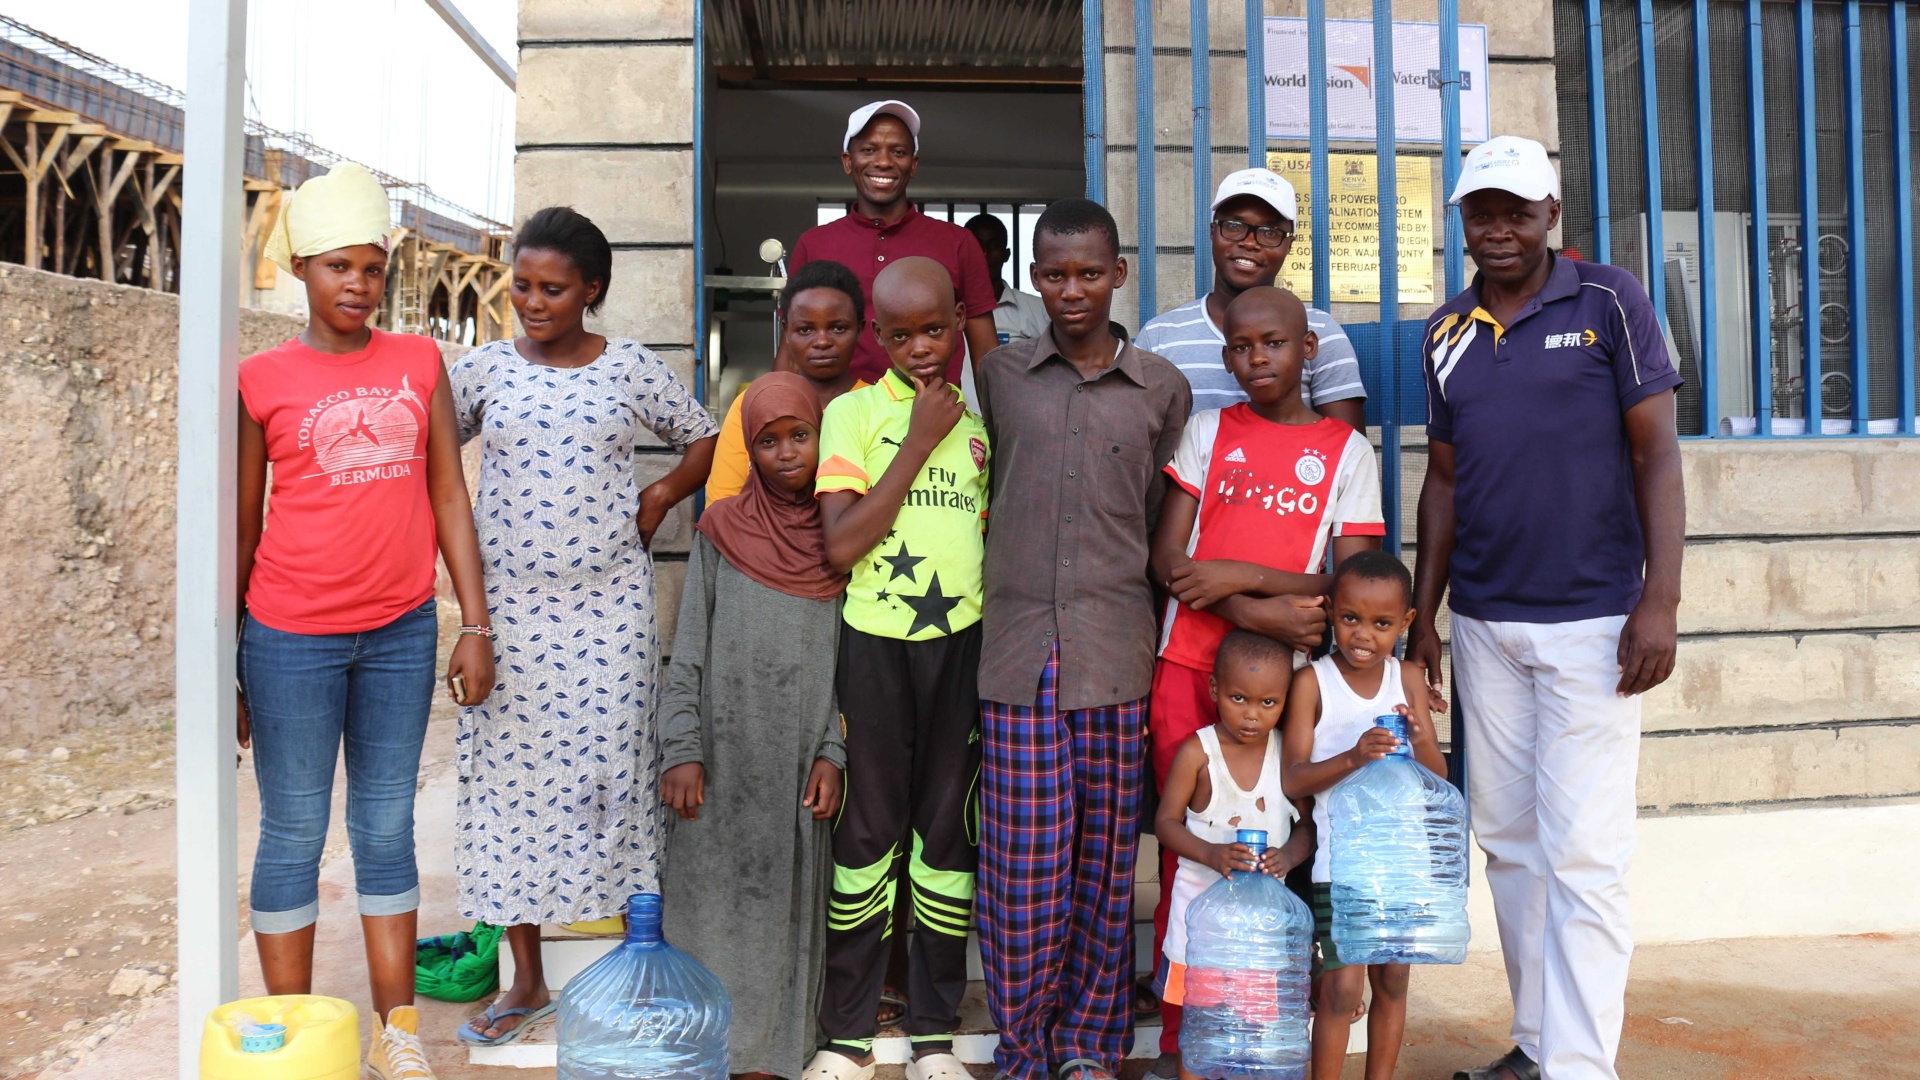 Jüngere und ältere Dorfbewohnerinnen und Dorfbewohner in Kenia stehen mit Wasserkanistern vor einem WaterKiosk